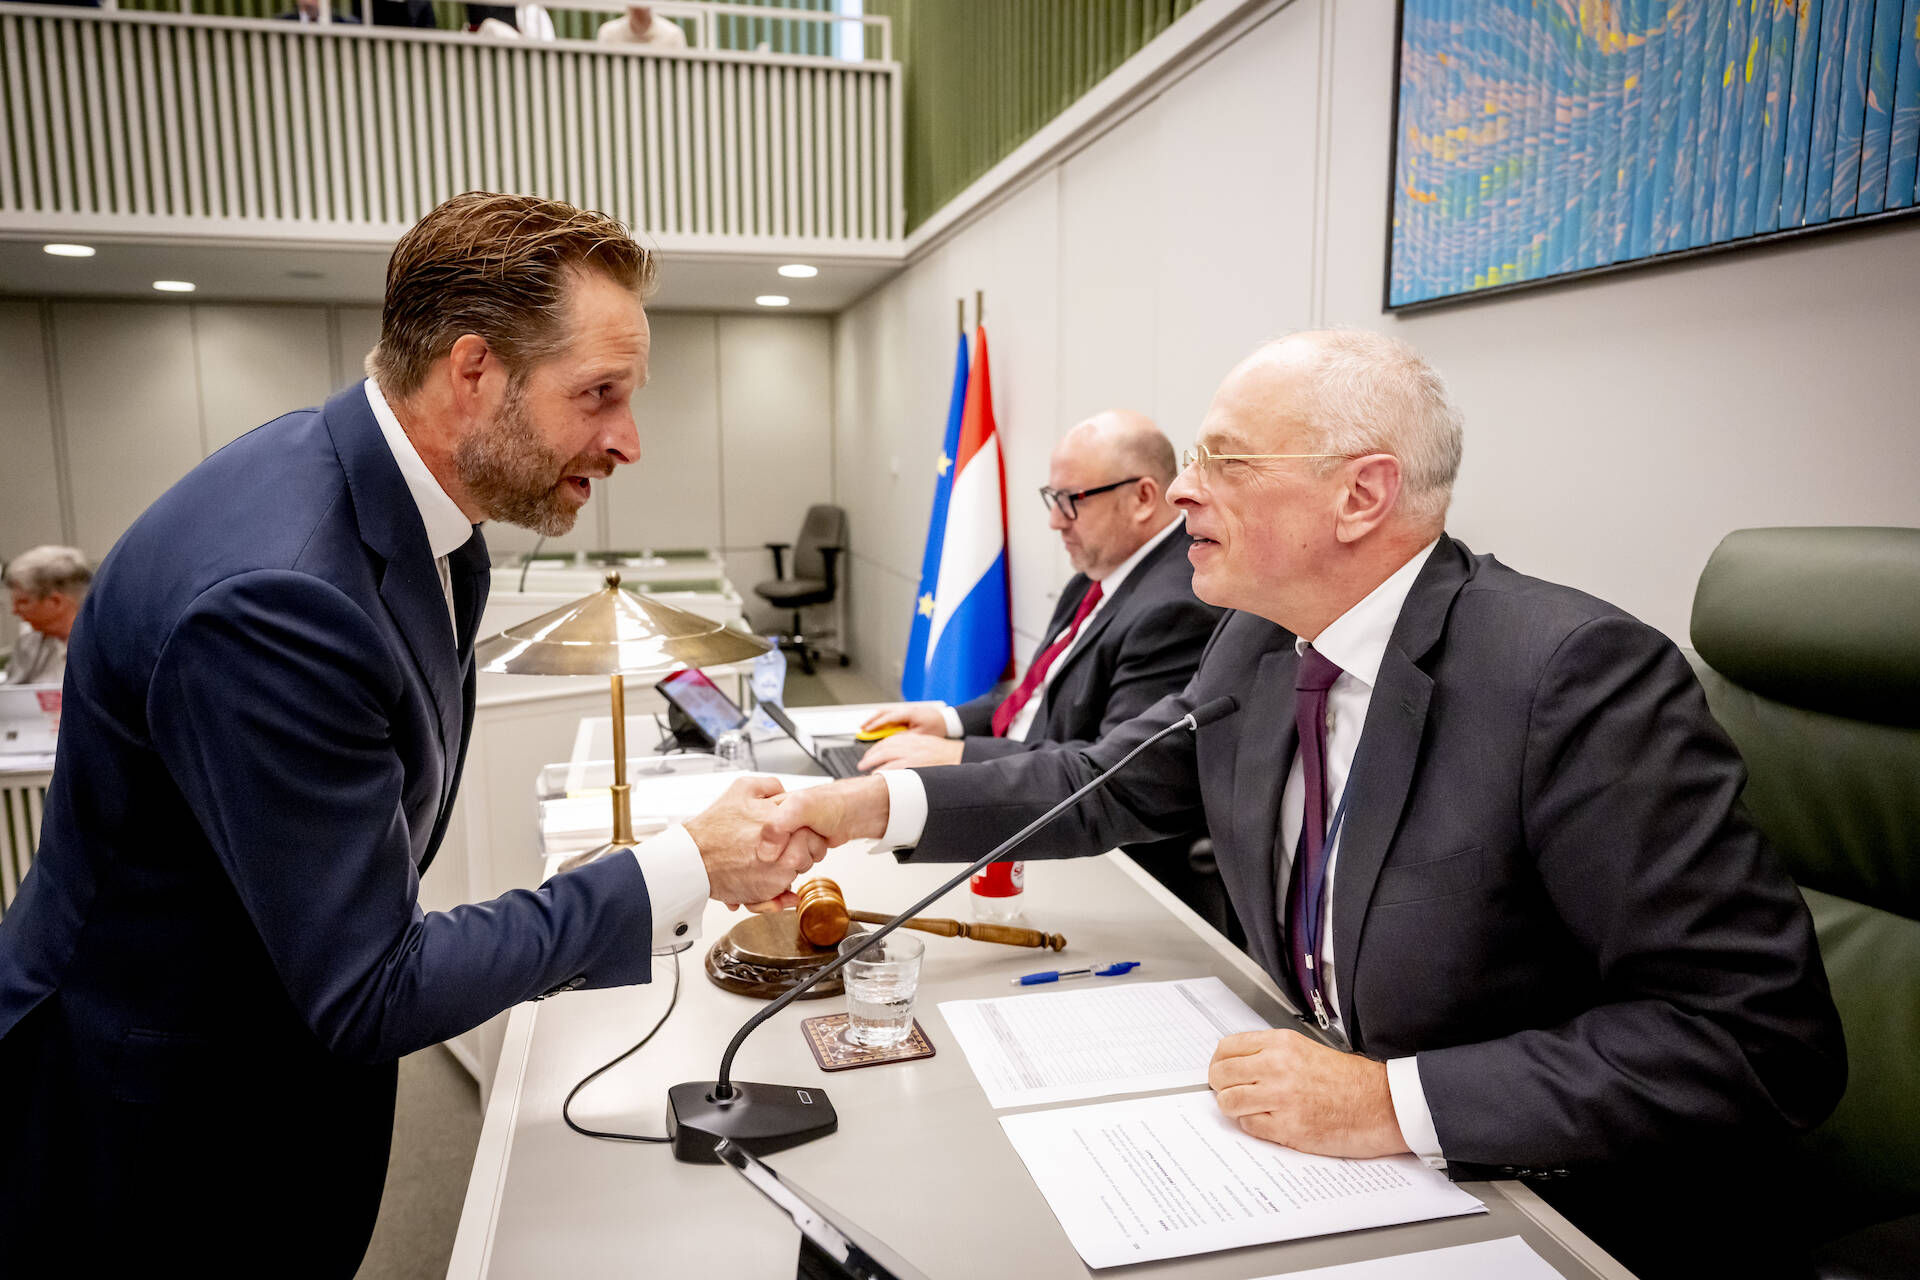 Demissionair minister De Jonge begroet Kamervoorzitter Bruijn voor aanvang van het debat